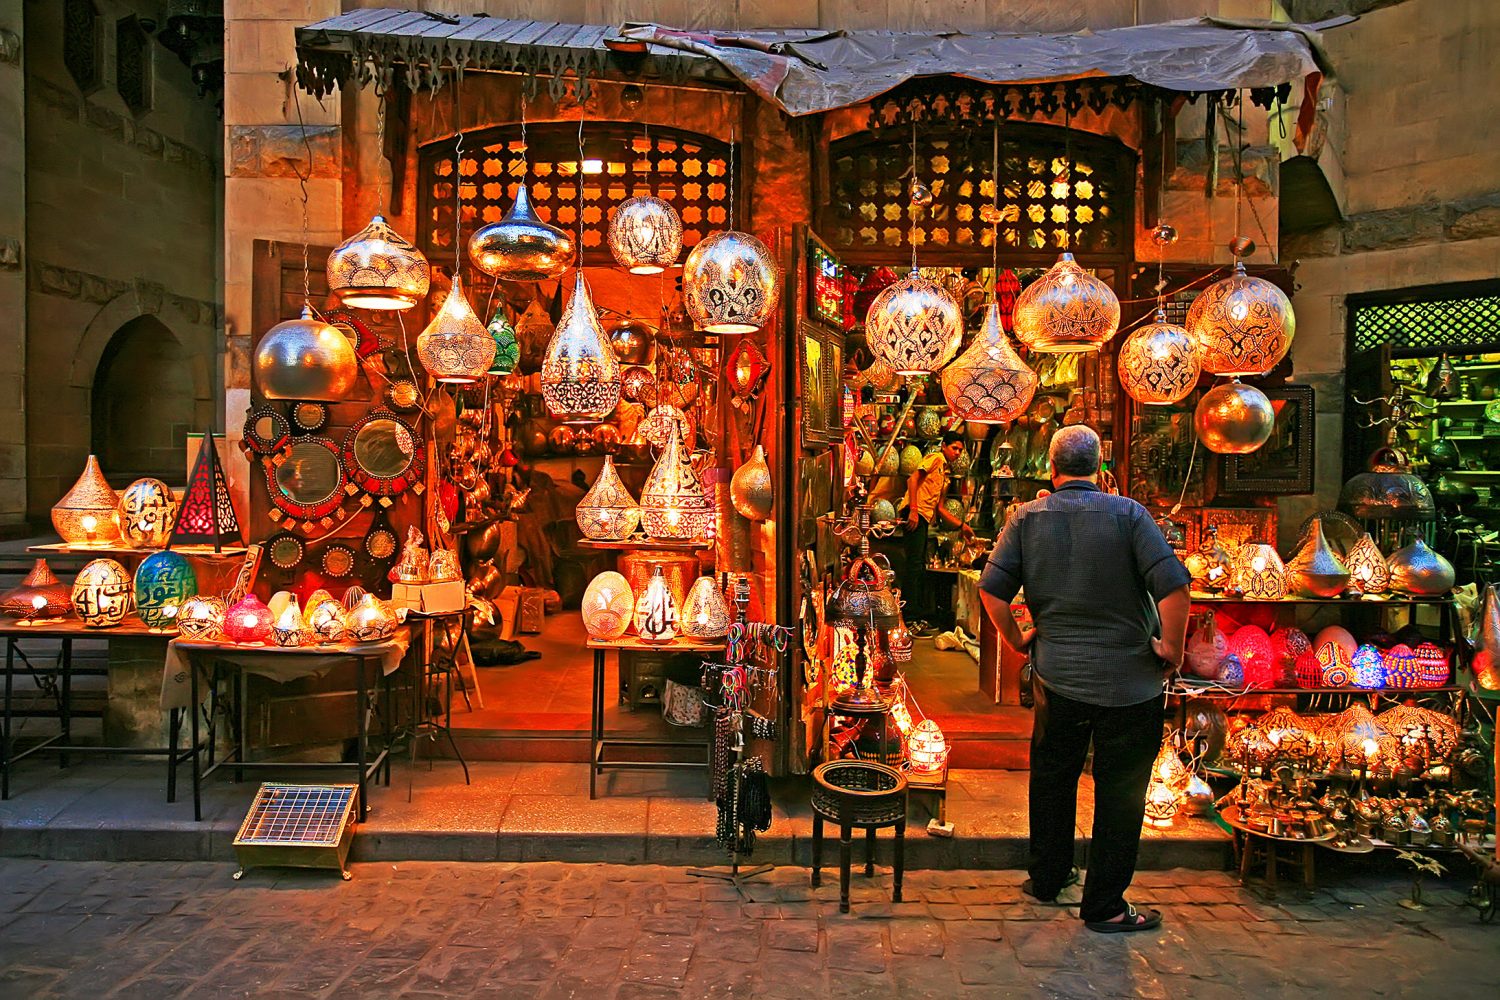 أفضل الأماكن السياحية في القاهرة - خان الخليلي